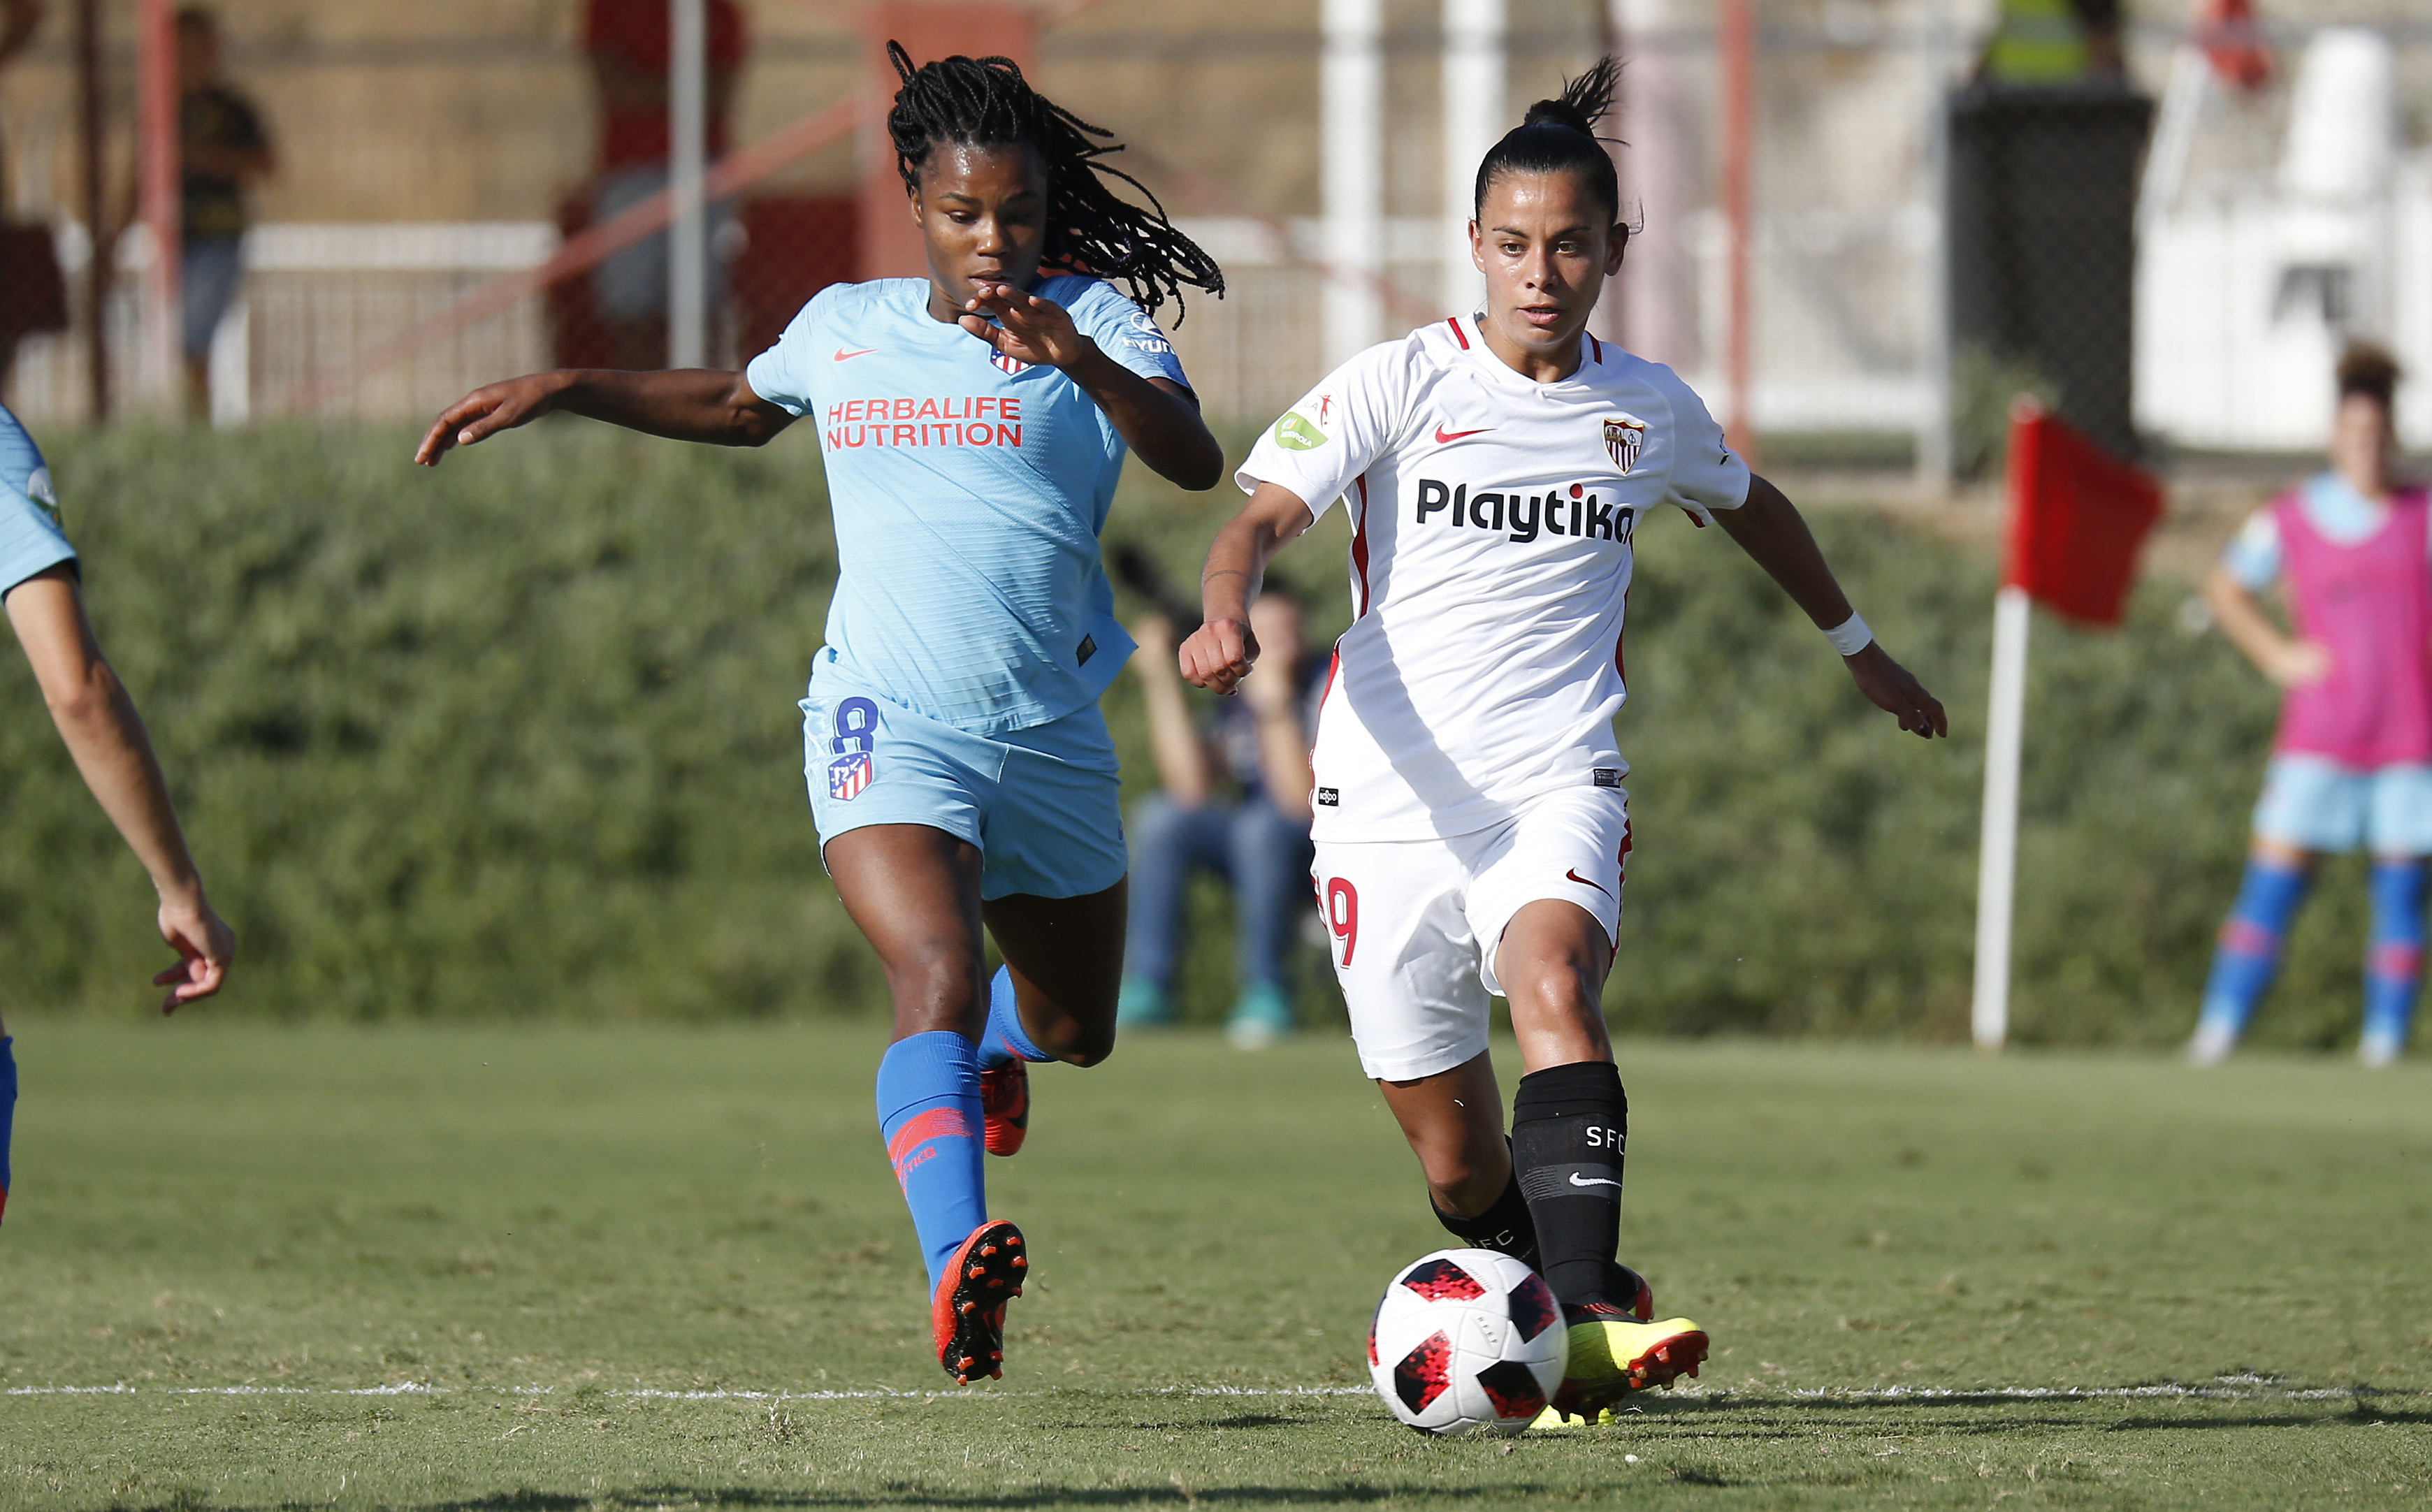 Pancha Lara conduce el balón durante el partido del pasado sábado entre el primer equipo femenino del Sevilla FC y el Atlético de Madrid Femenino